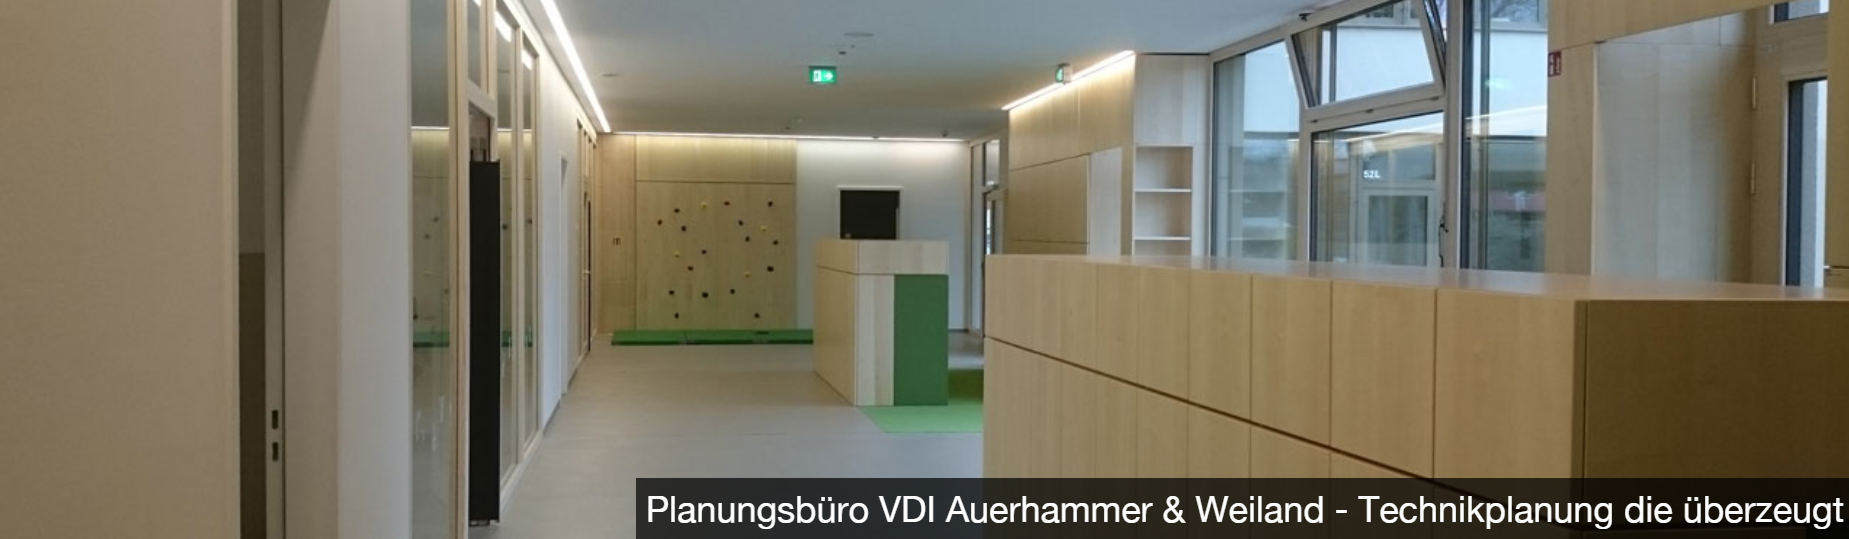 Planungsbüro Auerhammer & Weiland VDI Friedrichshafen 